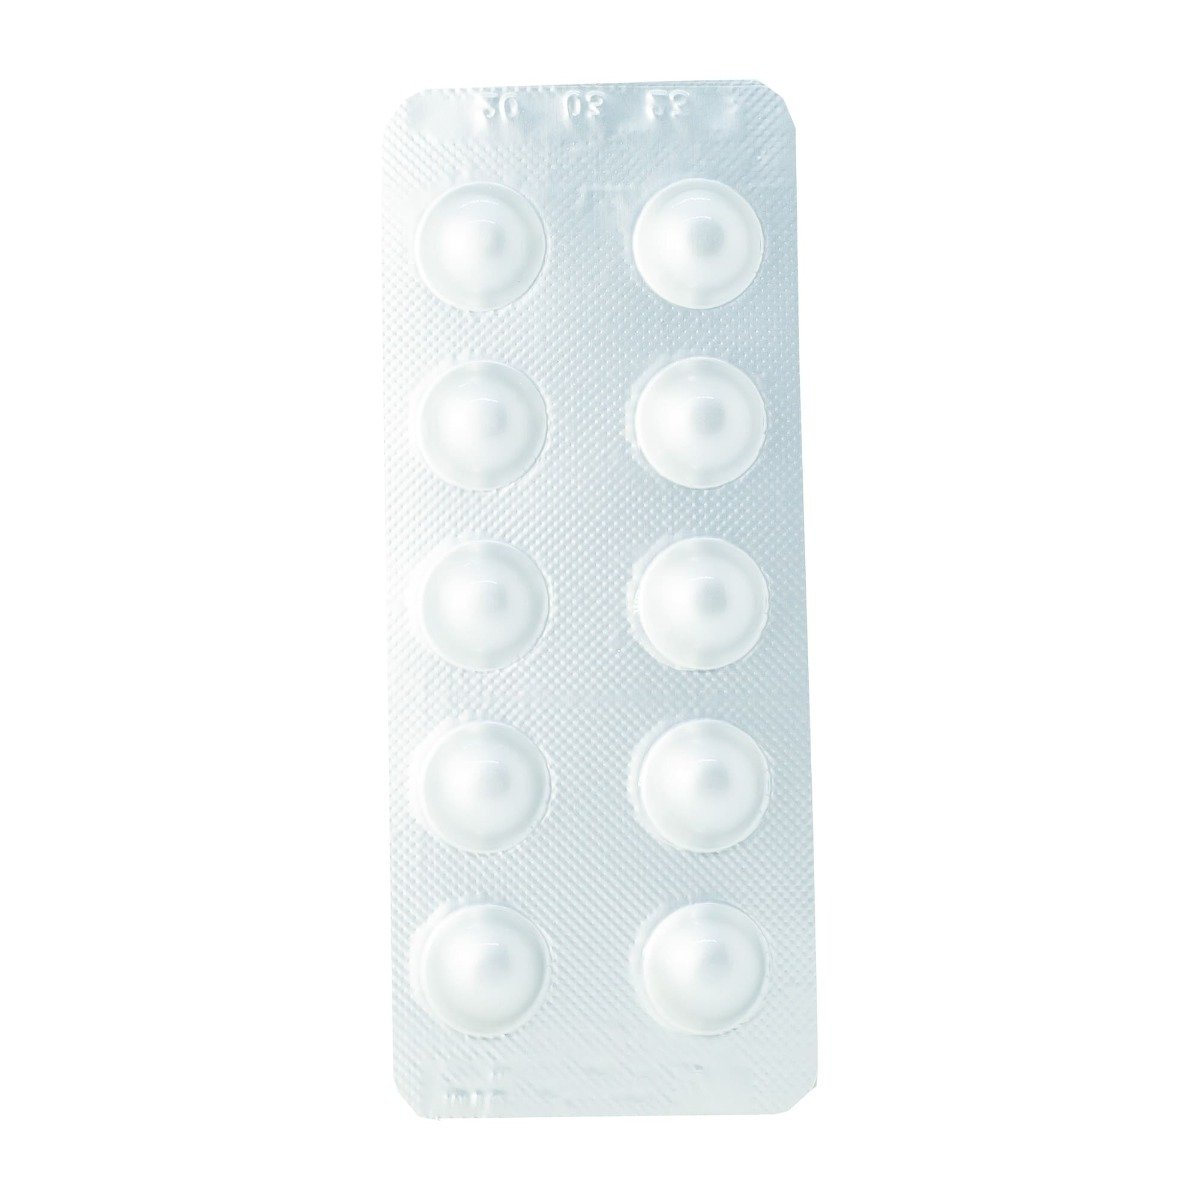 Erastapex Plus 20 mg-12.5 mg - 30 Tablets - Bloom Pharmacy